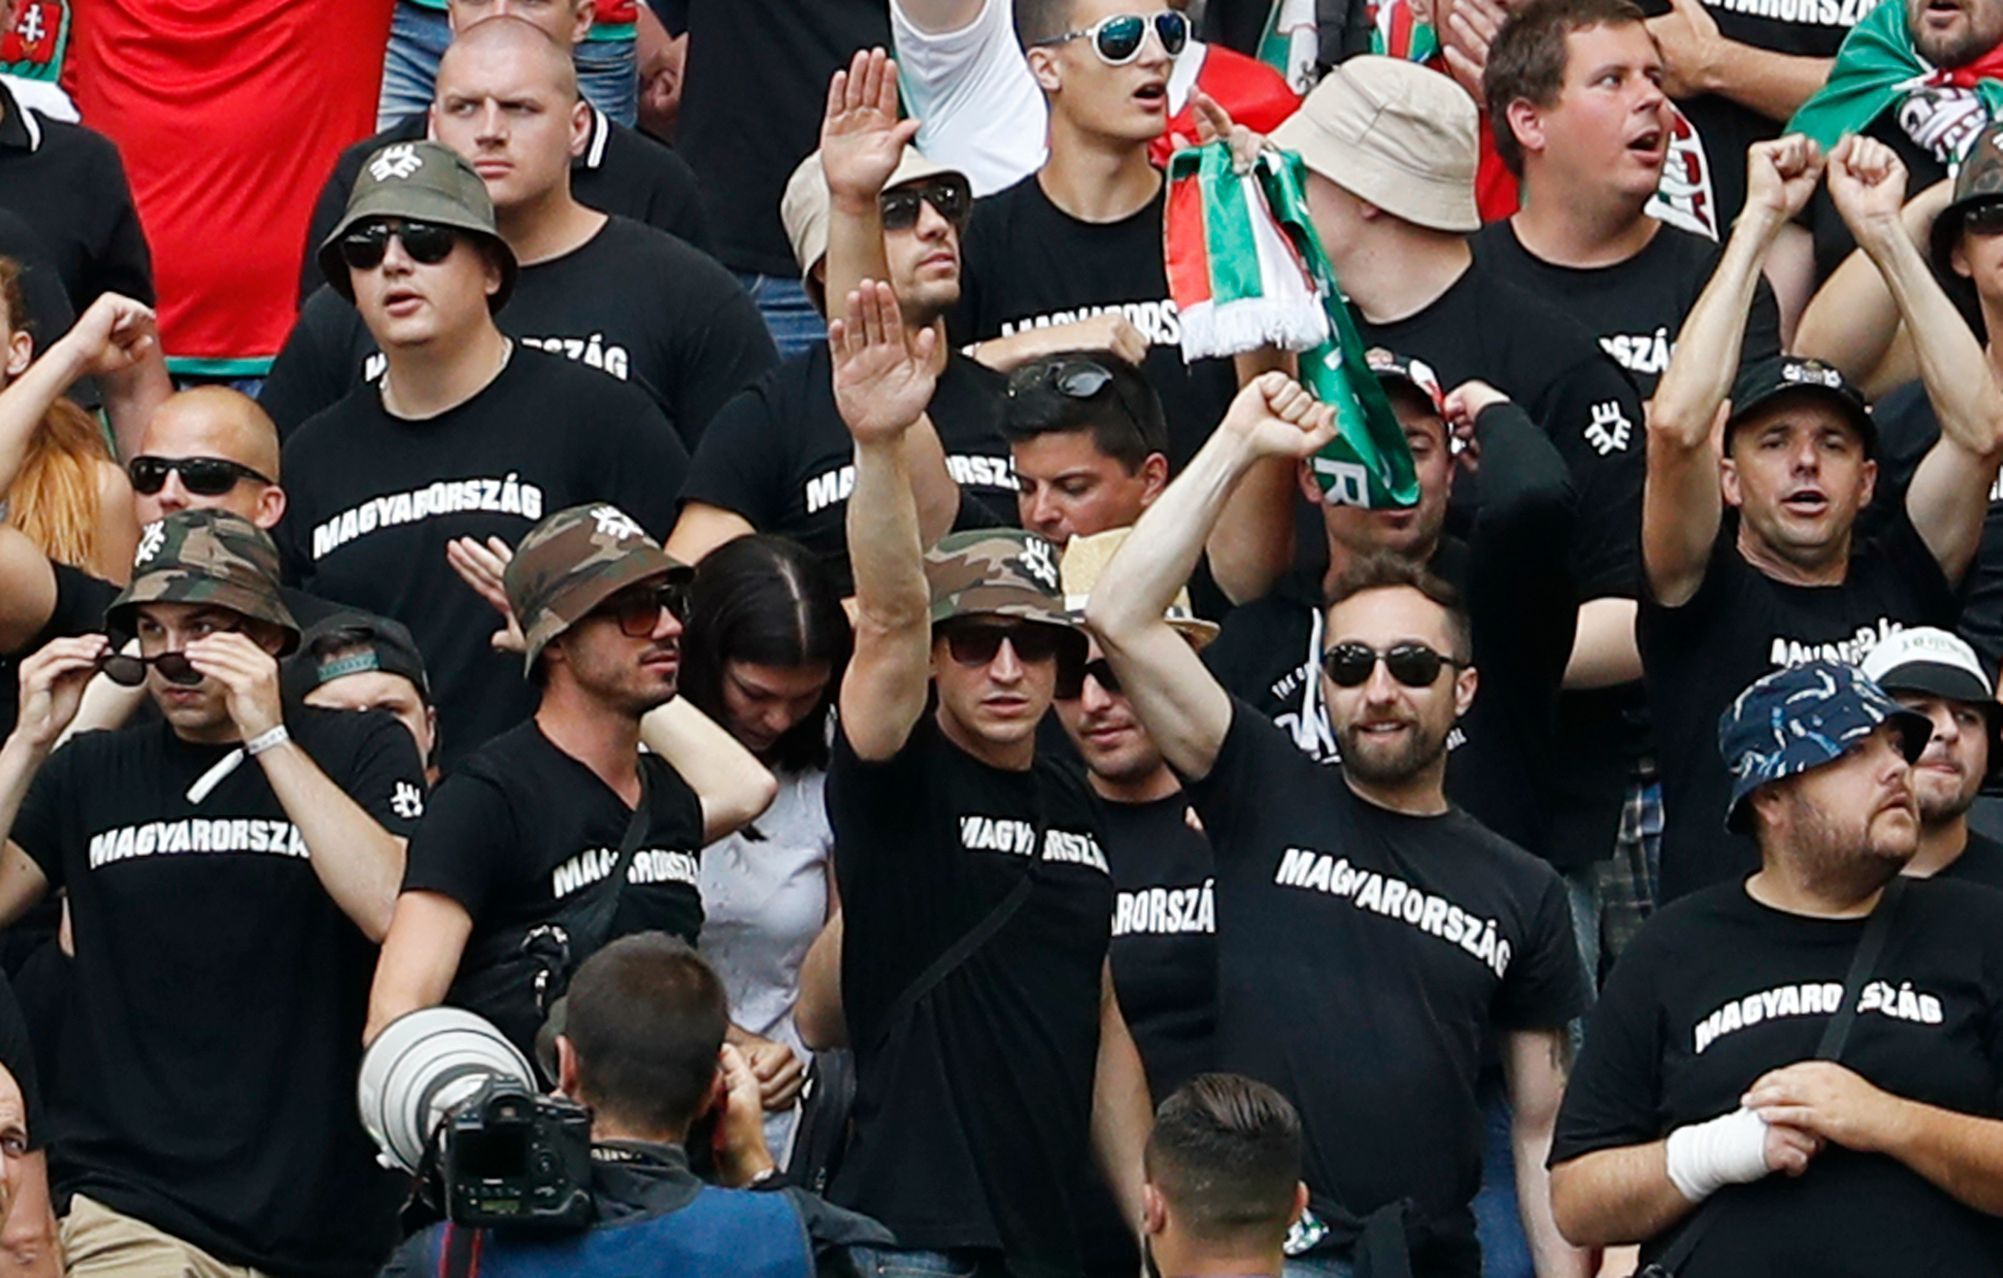 Euro 20161: výtržnosti maďarských fanoušků před zápasem s Islandem v Marseille - hajlování